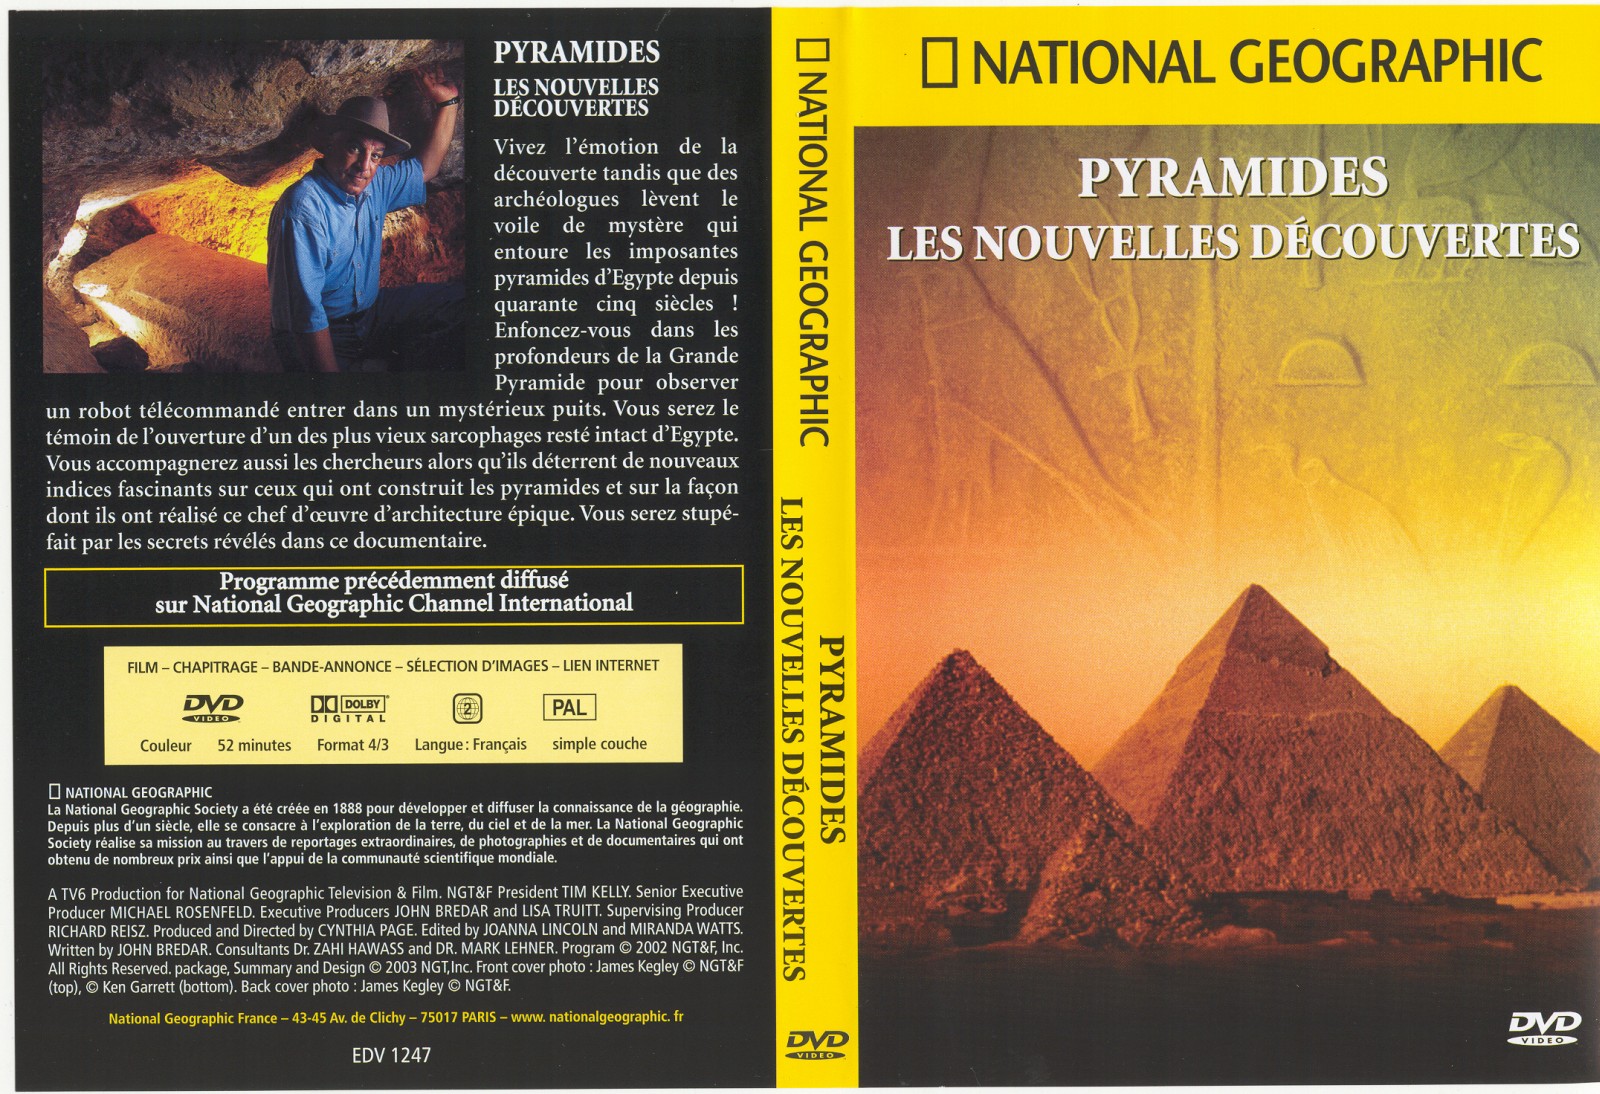 Jaquette DVD National Geographic -  Pyramides les nouvelles dcouvertes